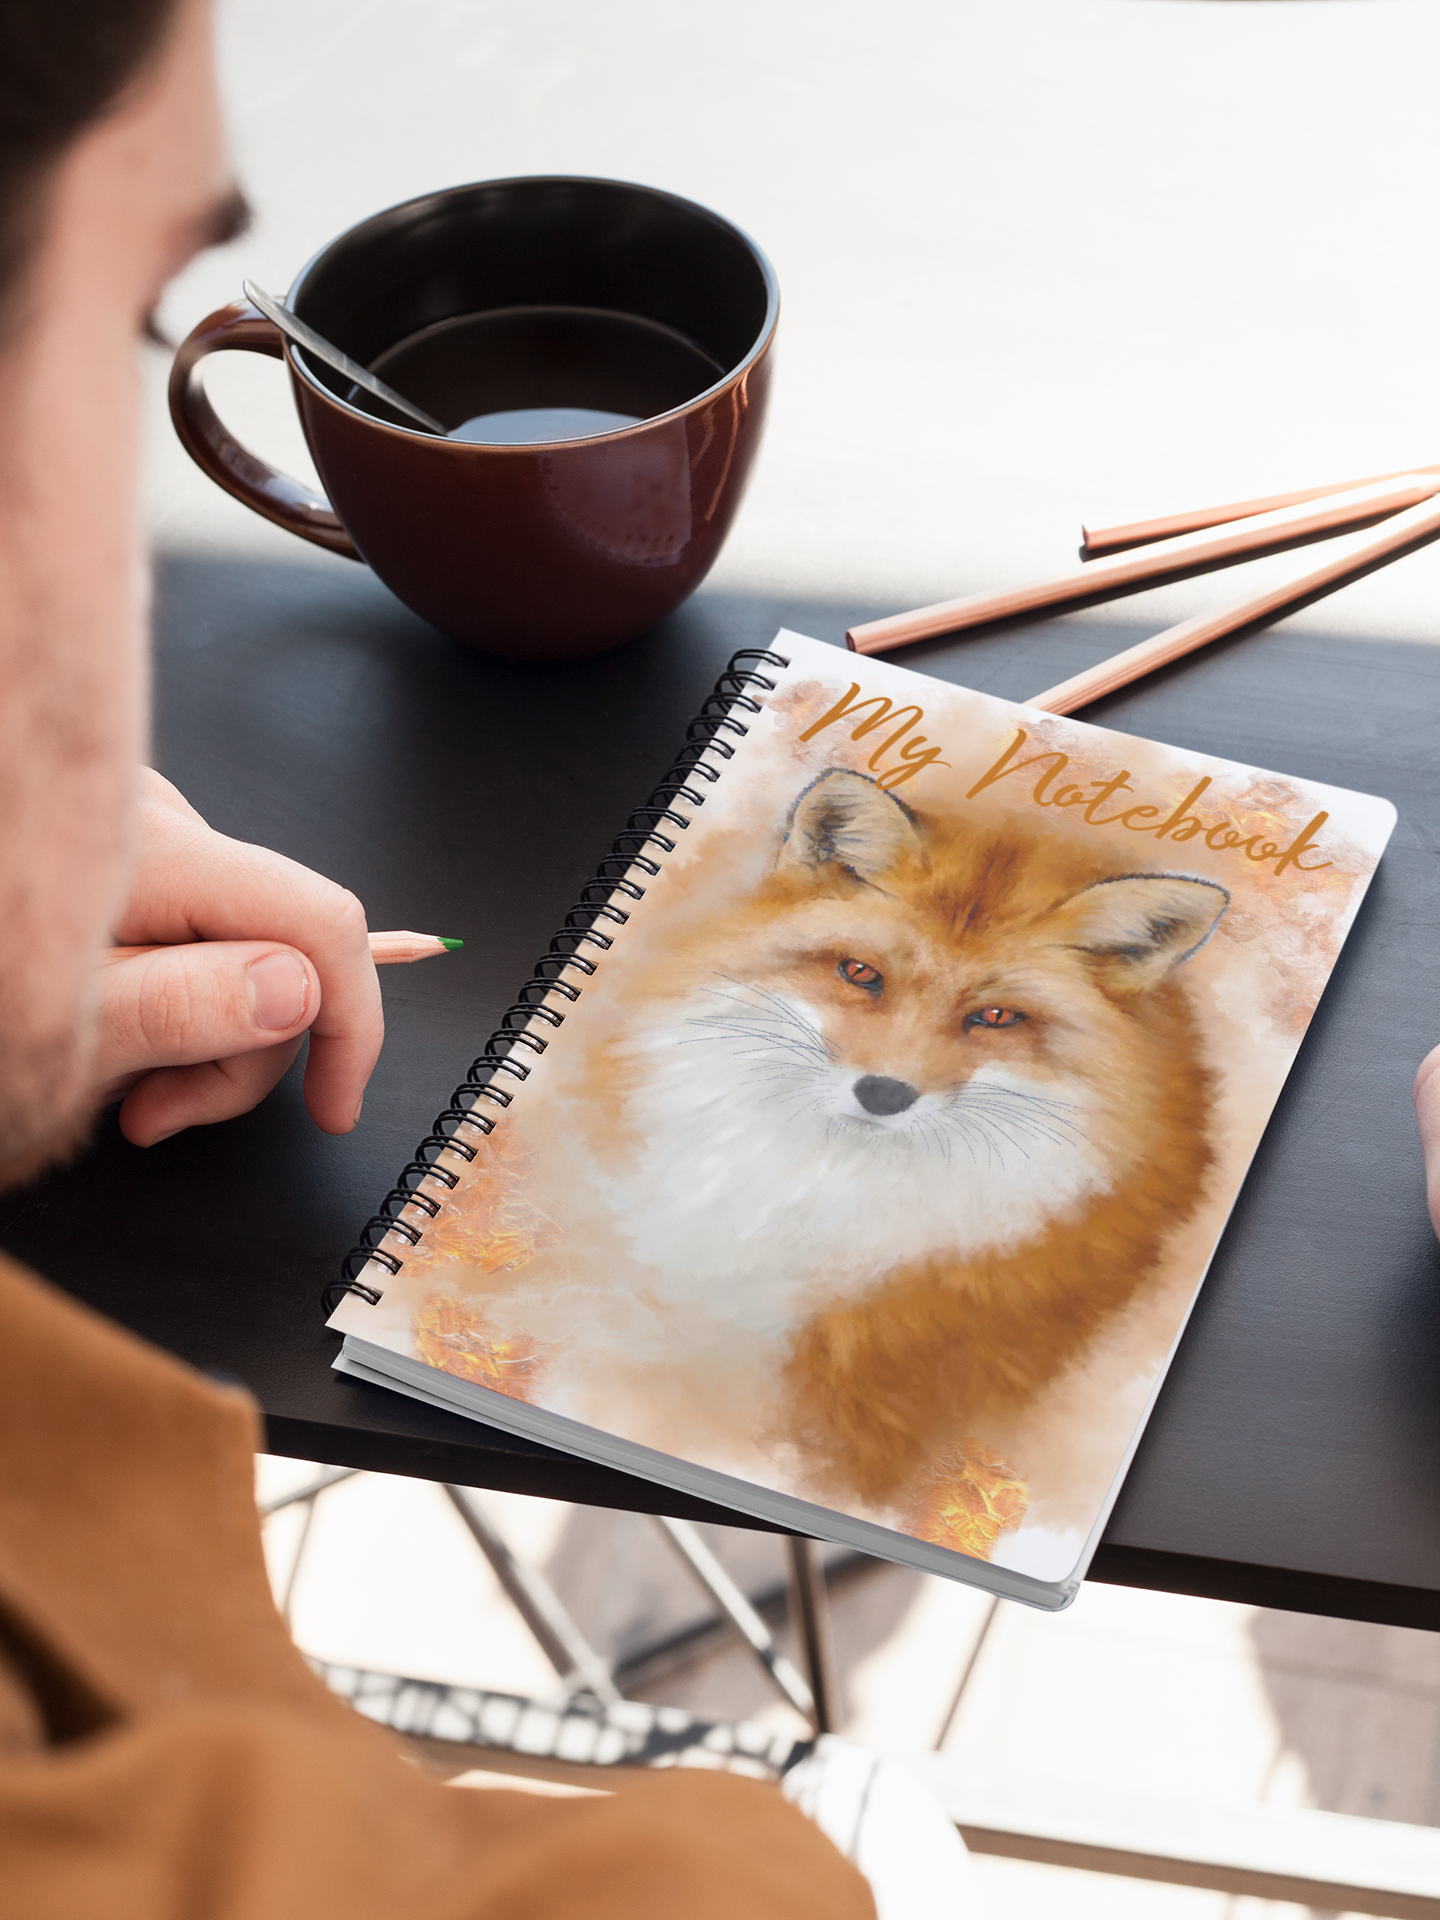 British Wildlife Art Fox Notebook Gift Idea